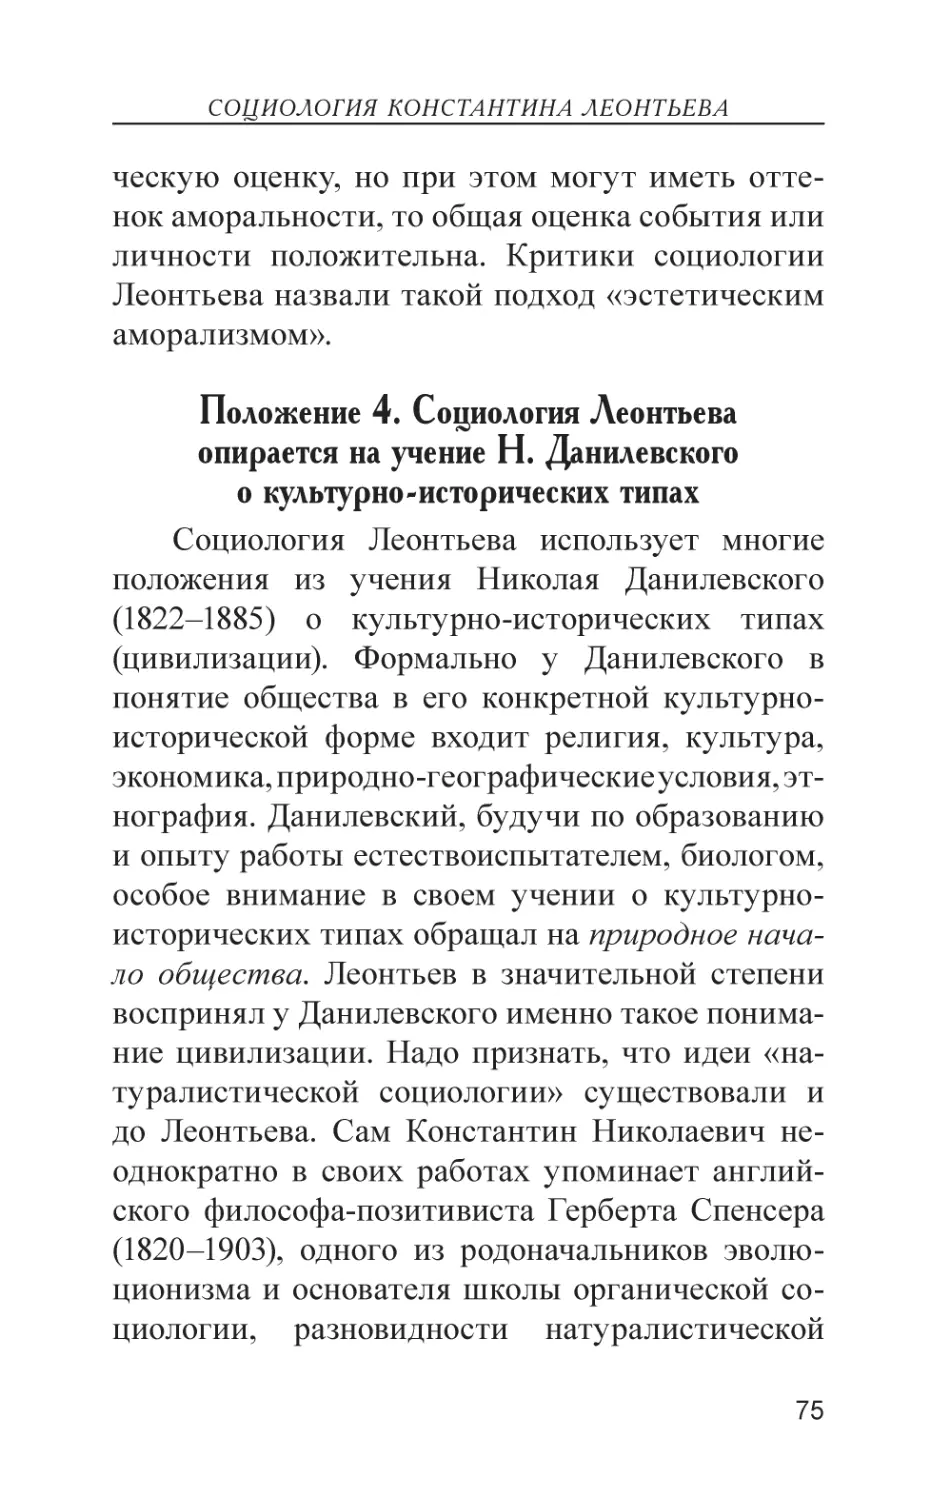 Положение 4. Социология Леонтьева опирается на учение Н. Данилевского о культурно-исторических типах